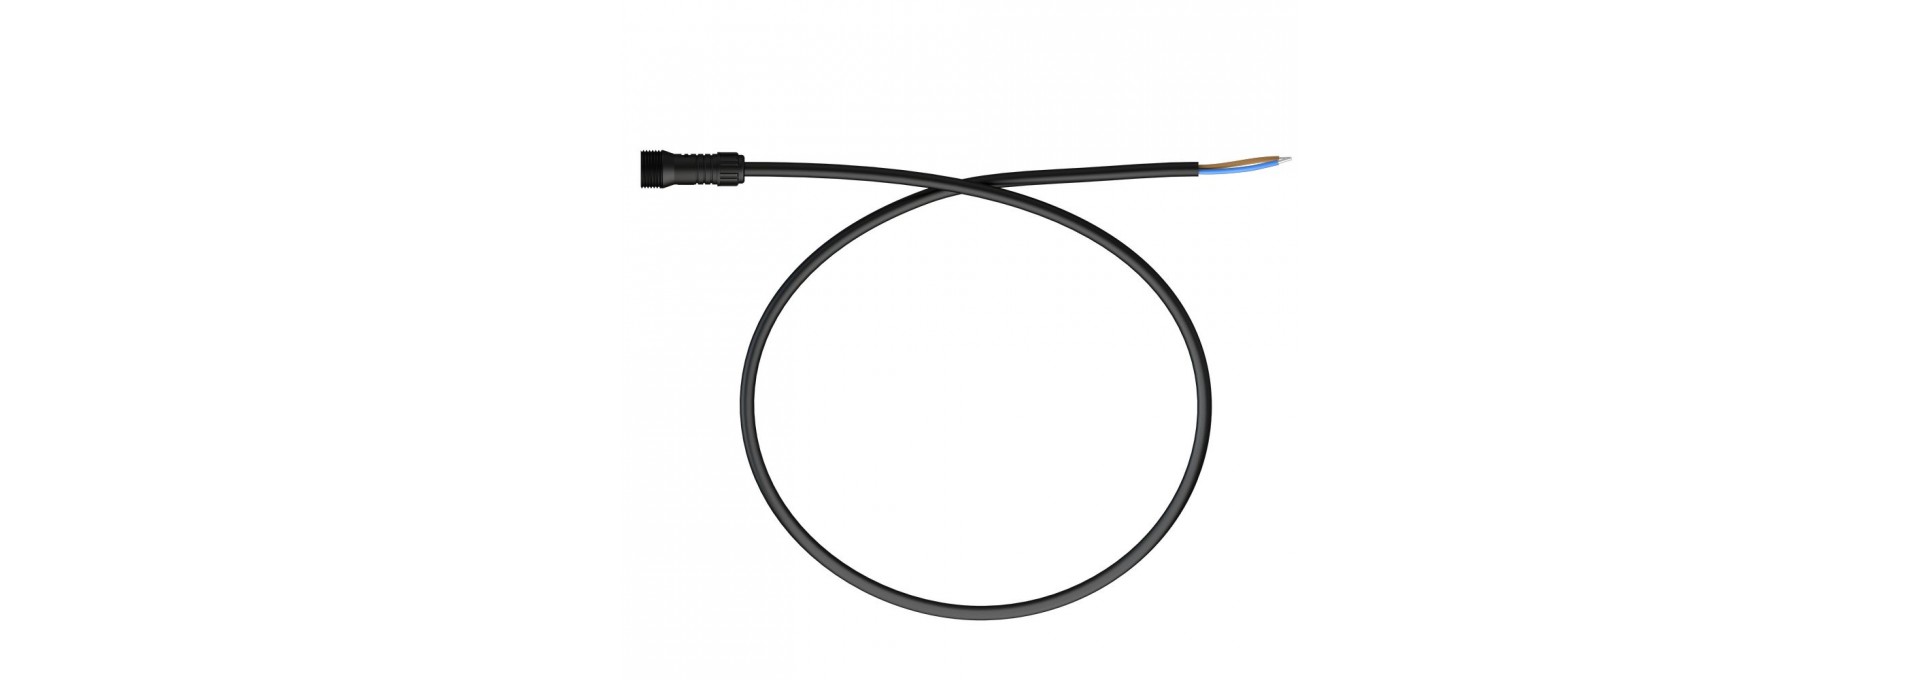 Вводной кабель с разъемом питания. M19, 24-48В, 3м